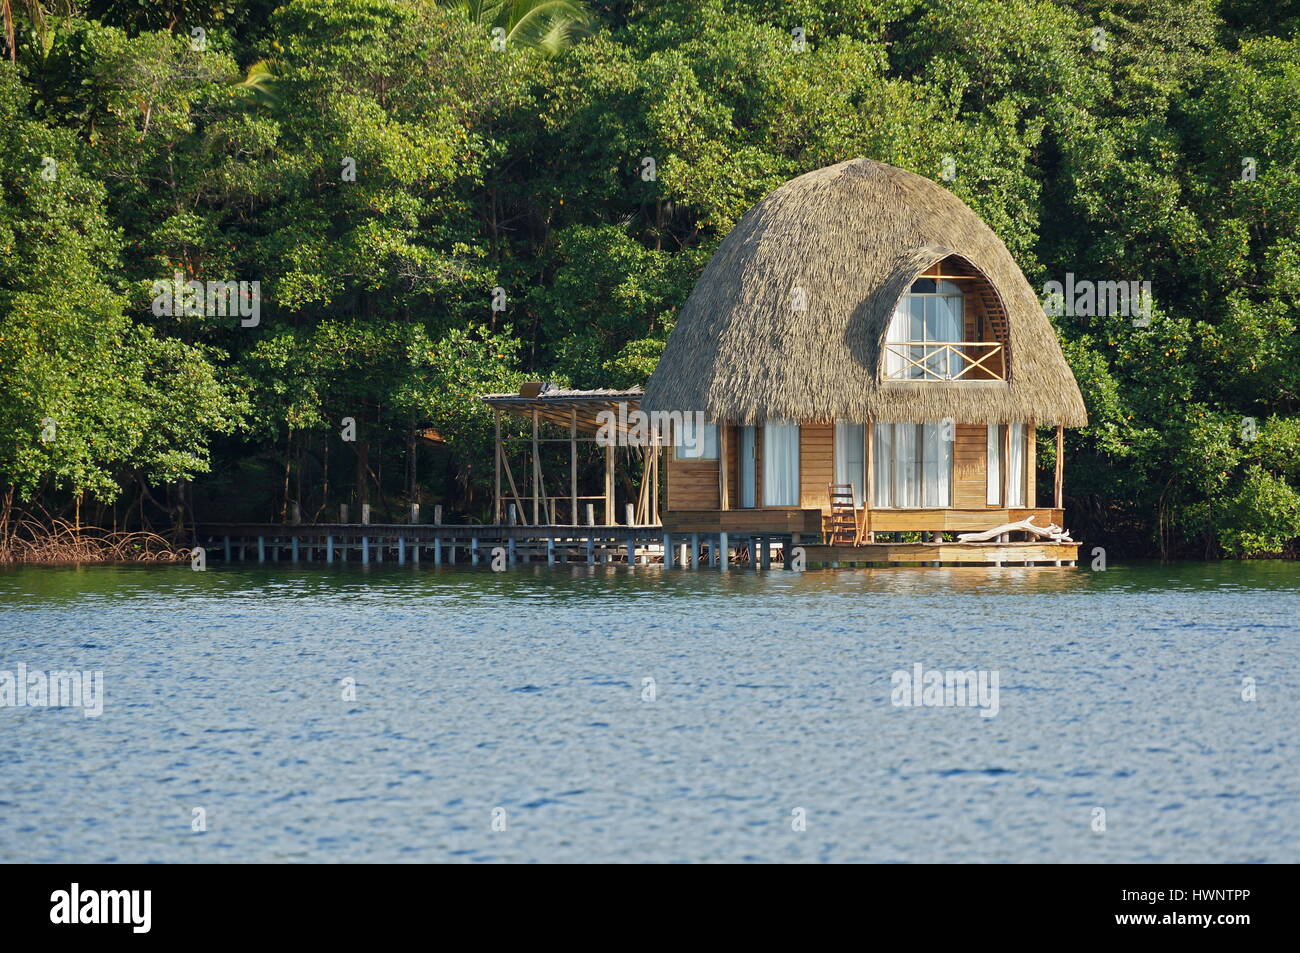 Bungalow sur pilotis en bois avec toit de chaume, architecture tropicale, Bocas del Toro, mer des Caraïbes, l'Amérique centrale, le Panama Banque D'Images